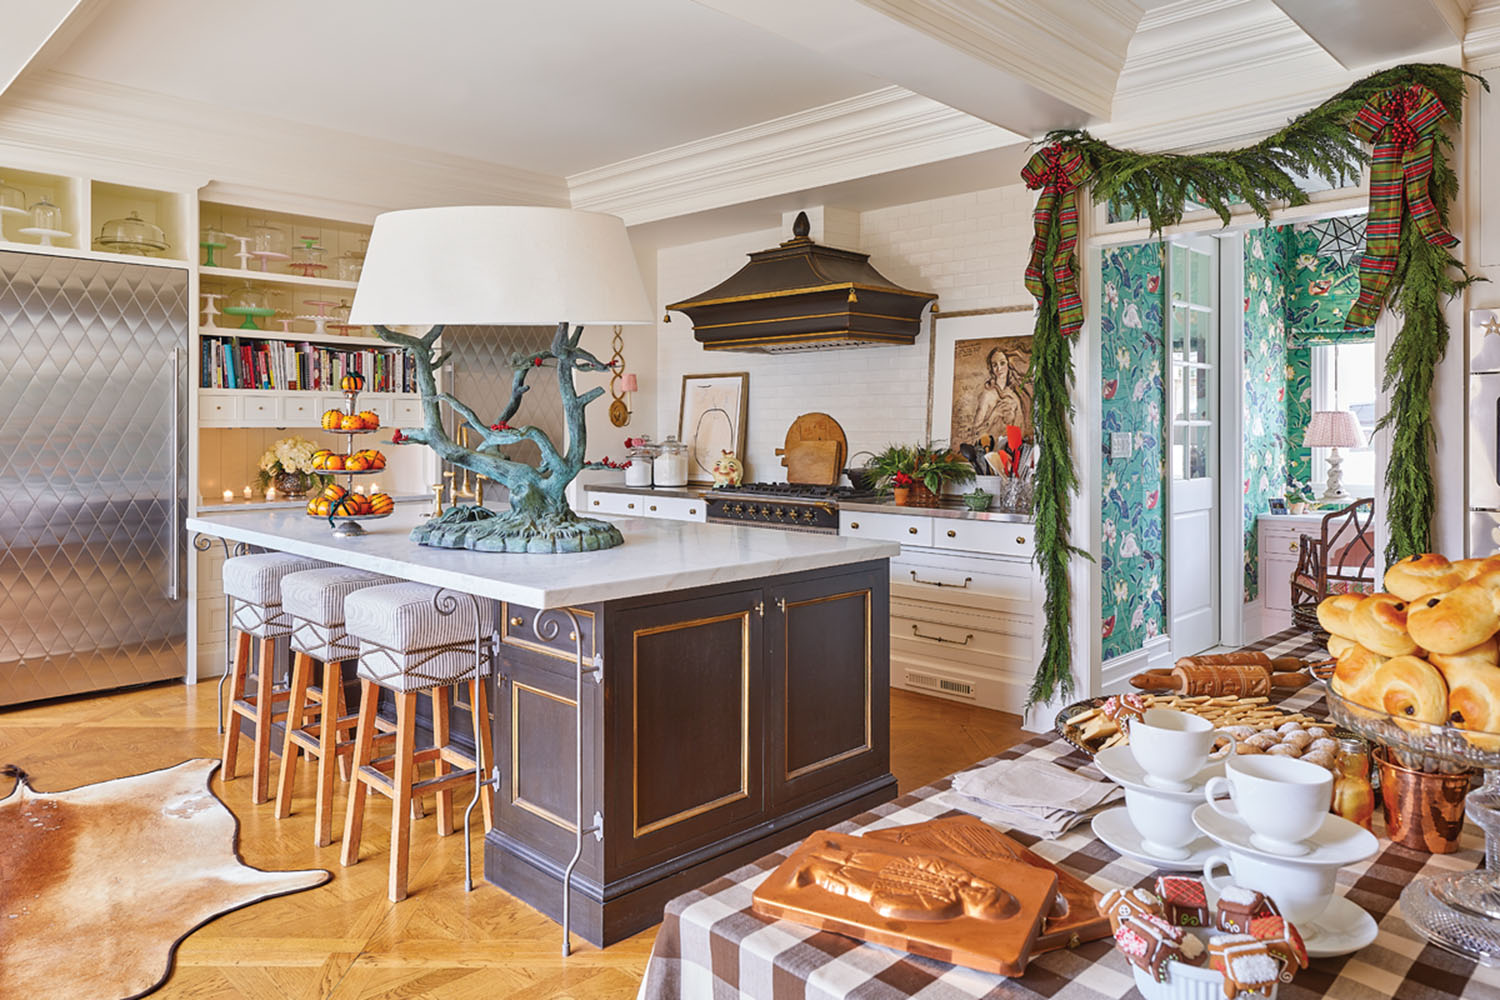 kitchen design, kitchen island, holiday decor